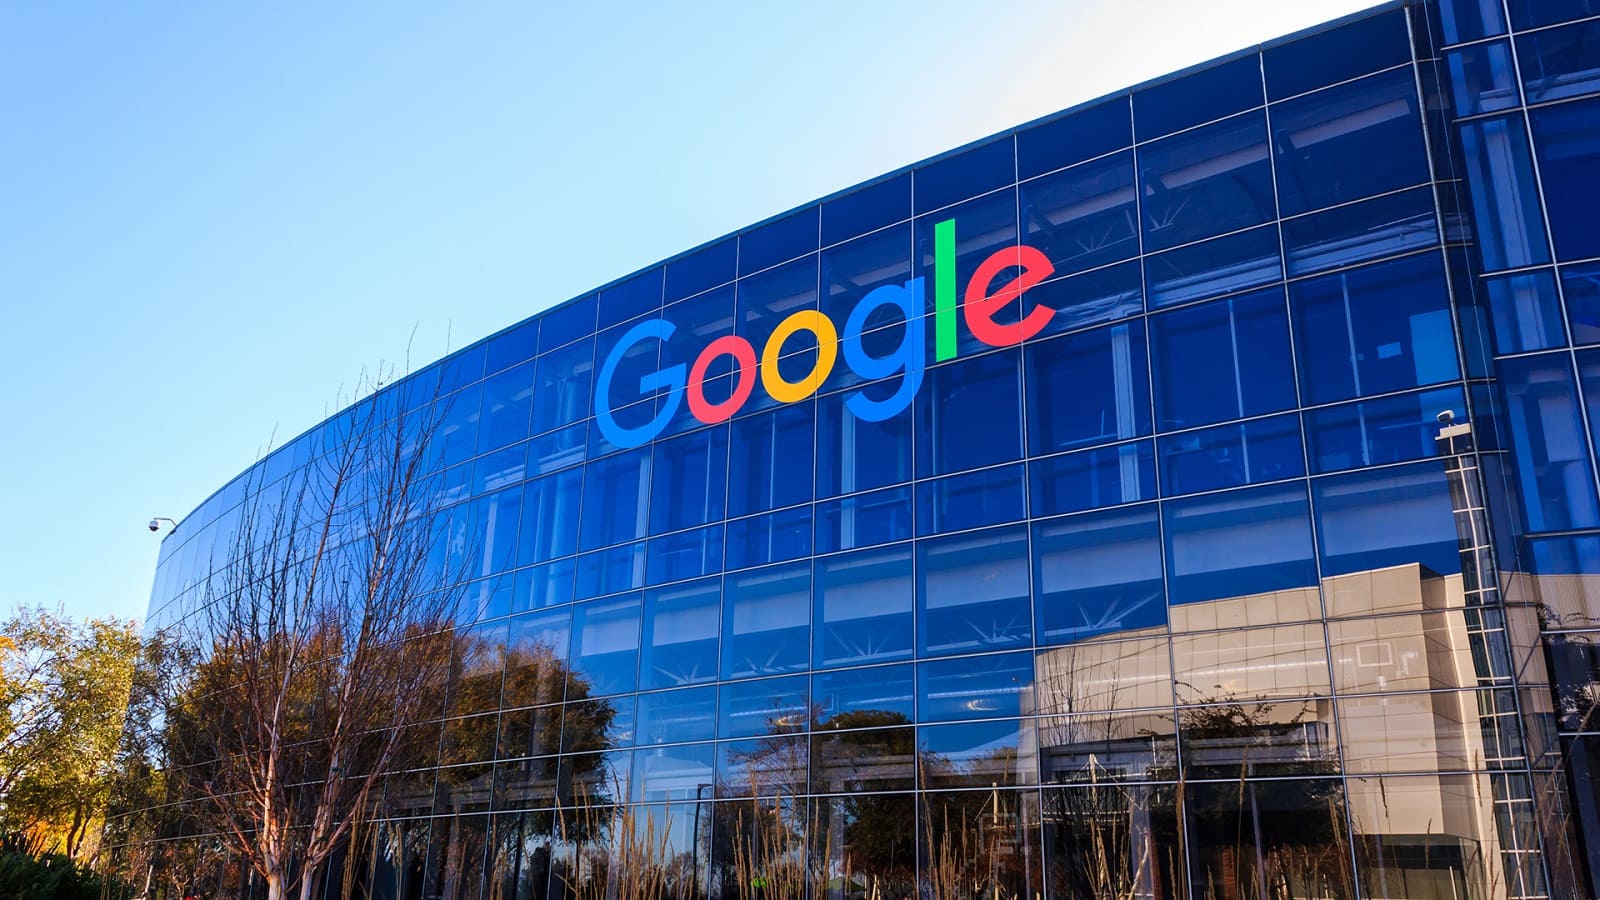 Google, HQ, Android, Brevetto